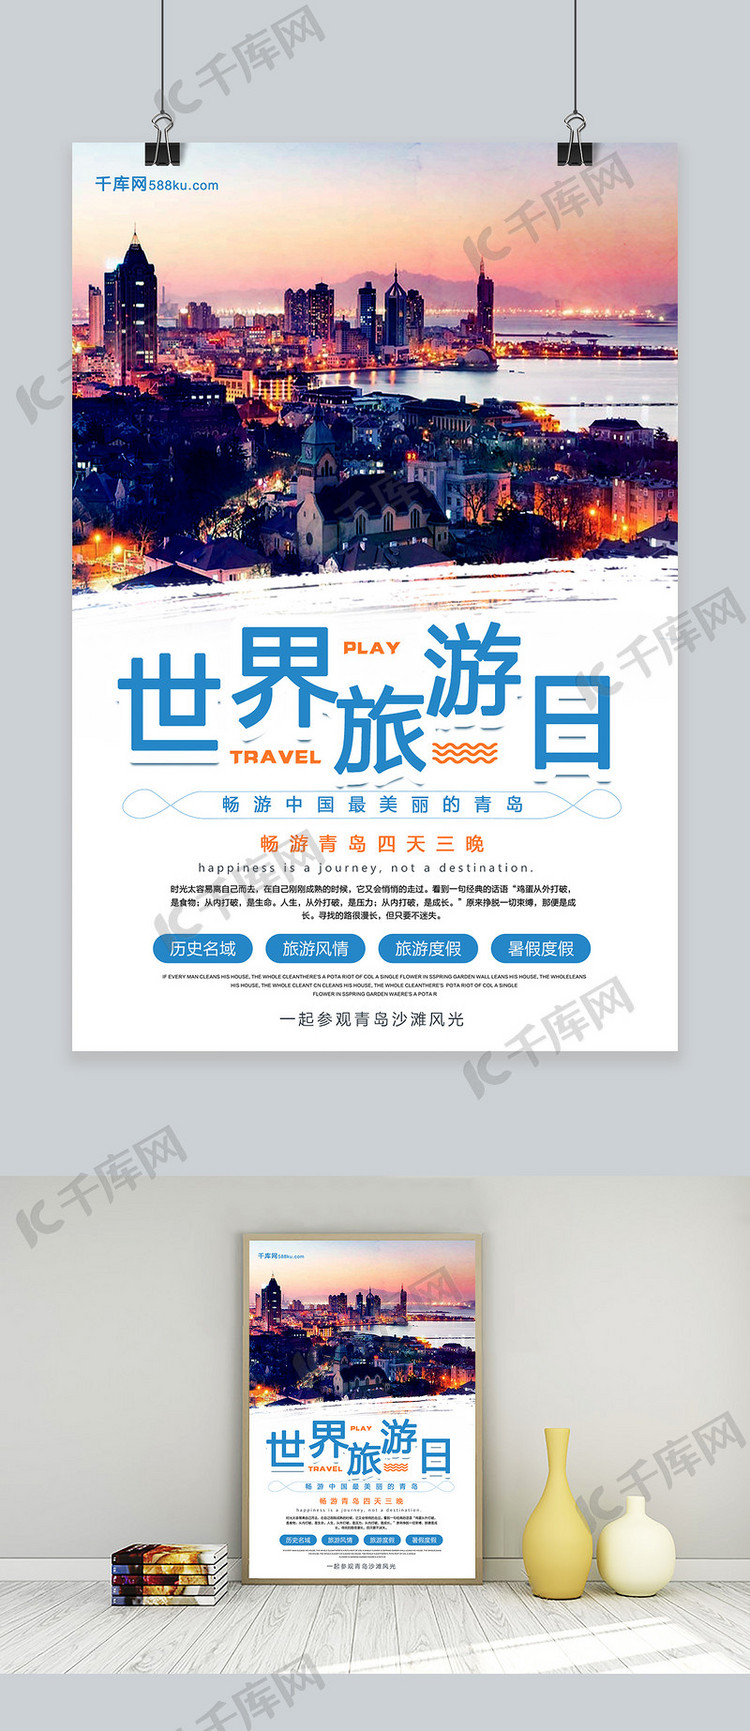 图片青岛旅游世界旅游日宣传促销海报